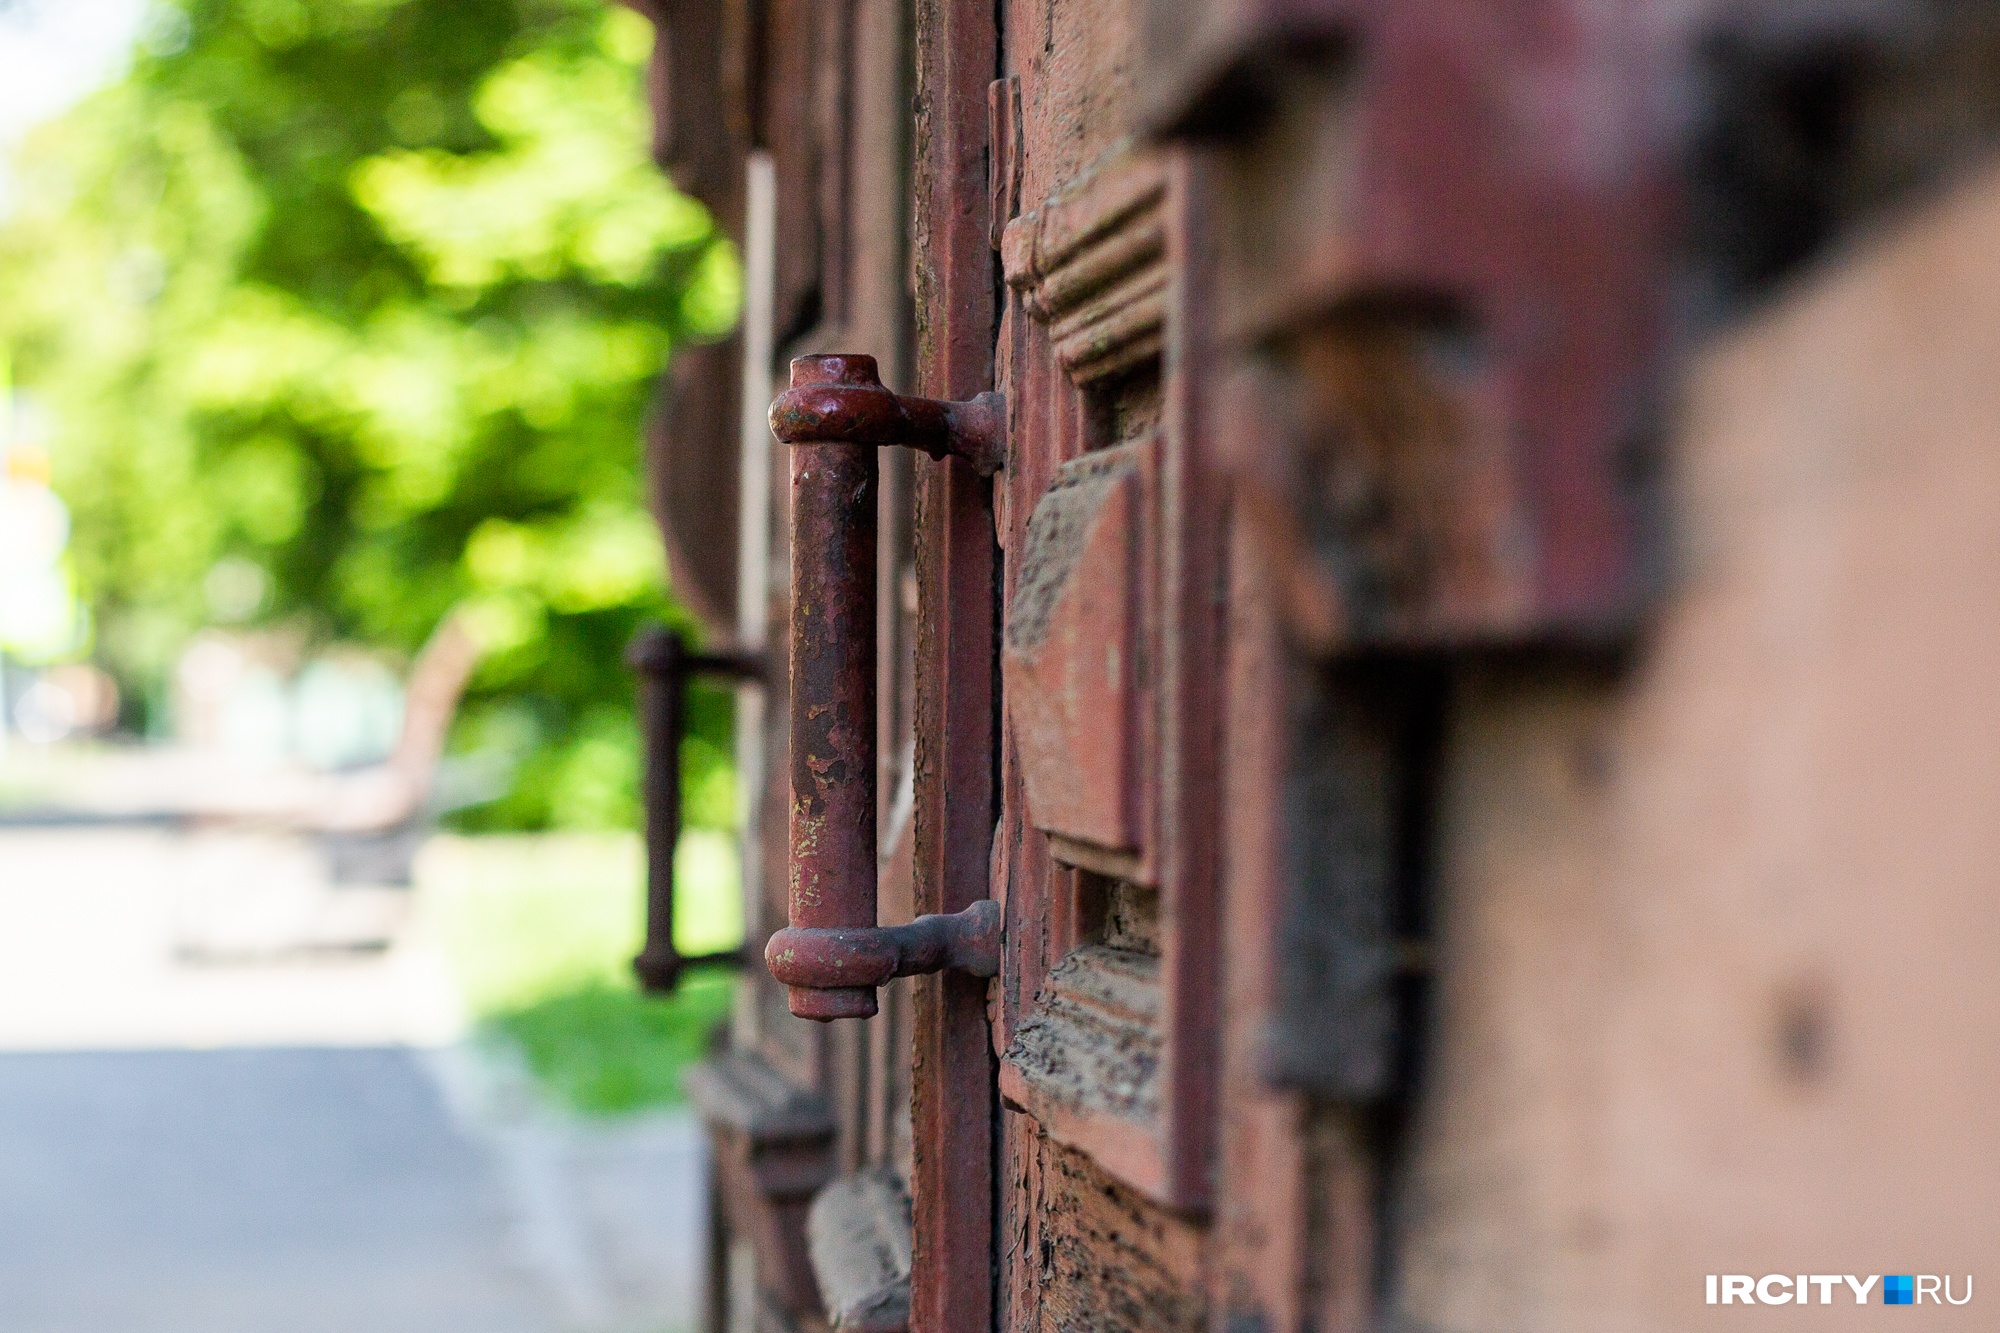 Старинные двери, которые почти всегда закрыты. Входы для жильцов обустроены с внутренней стороны дома